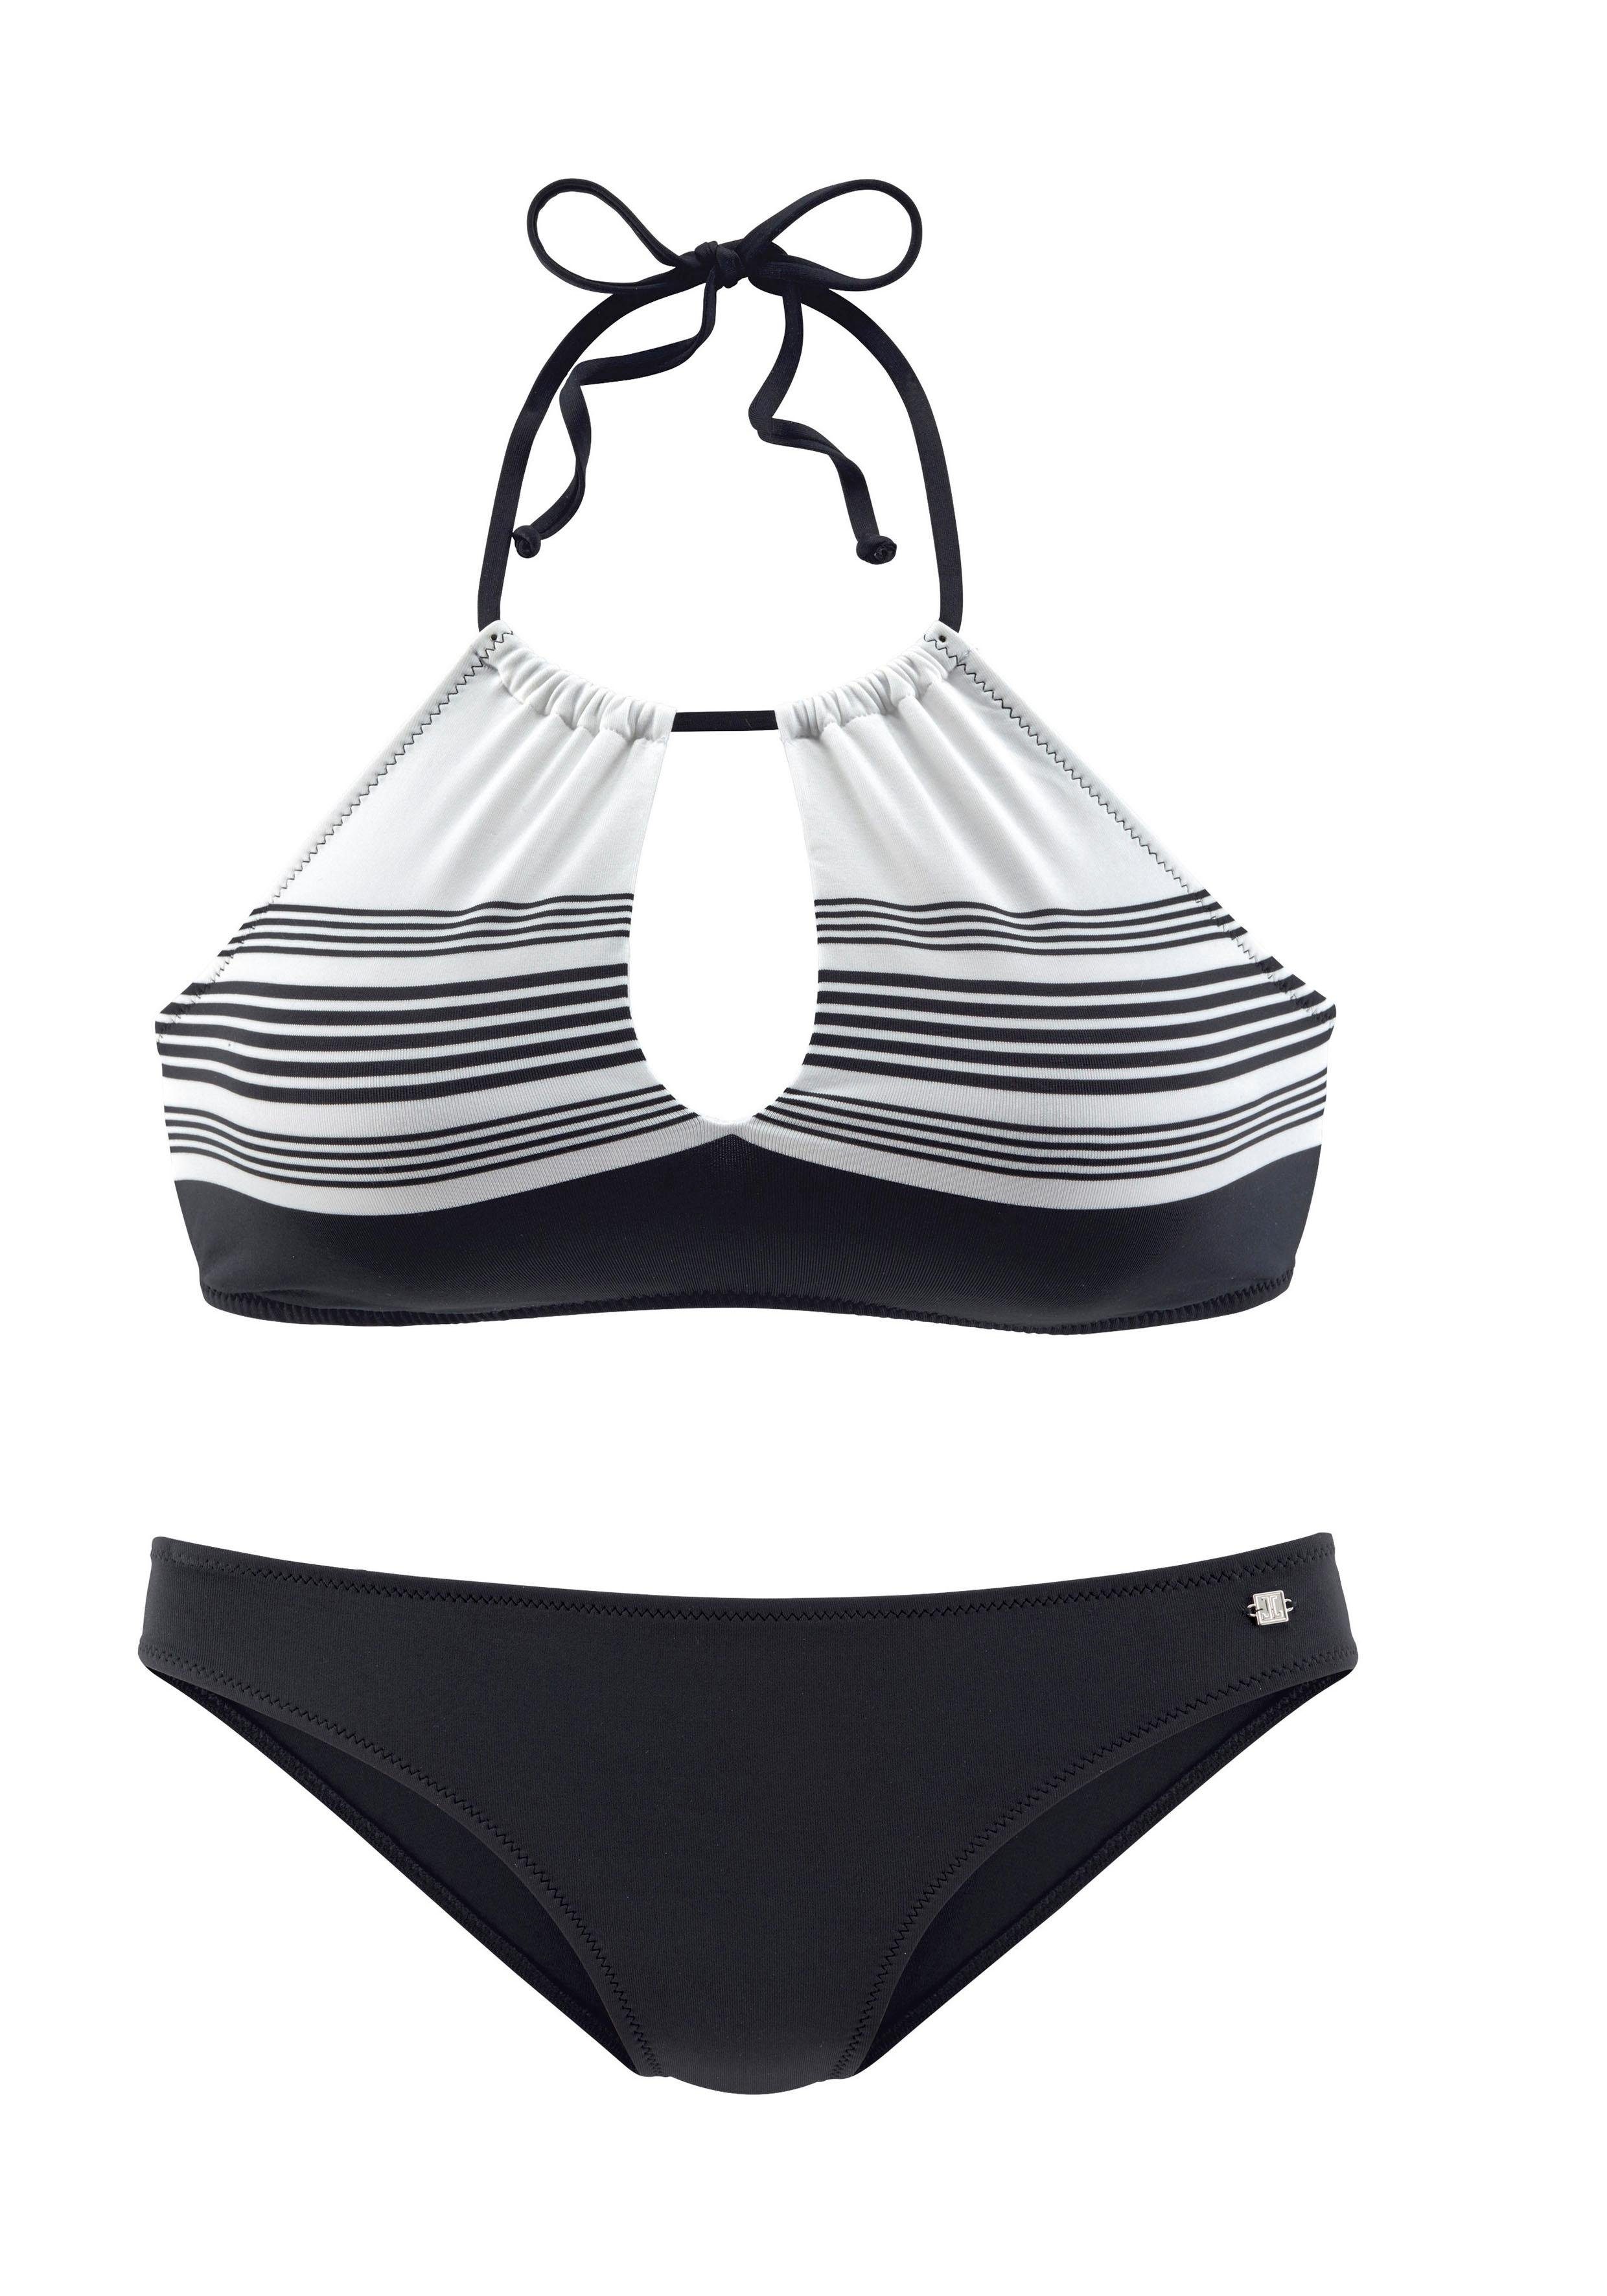 Design mit JETTE hochwertigem Bustier-Bikini